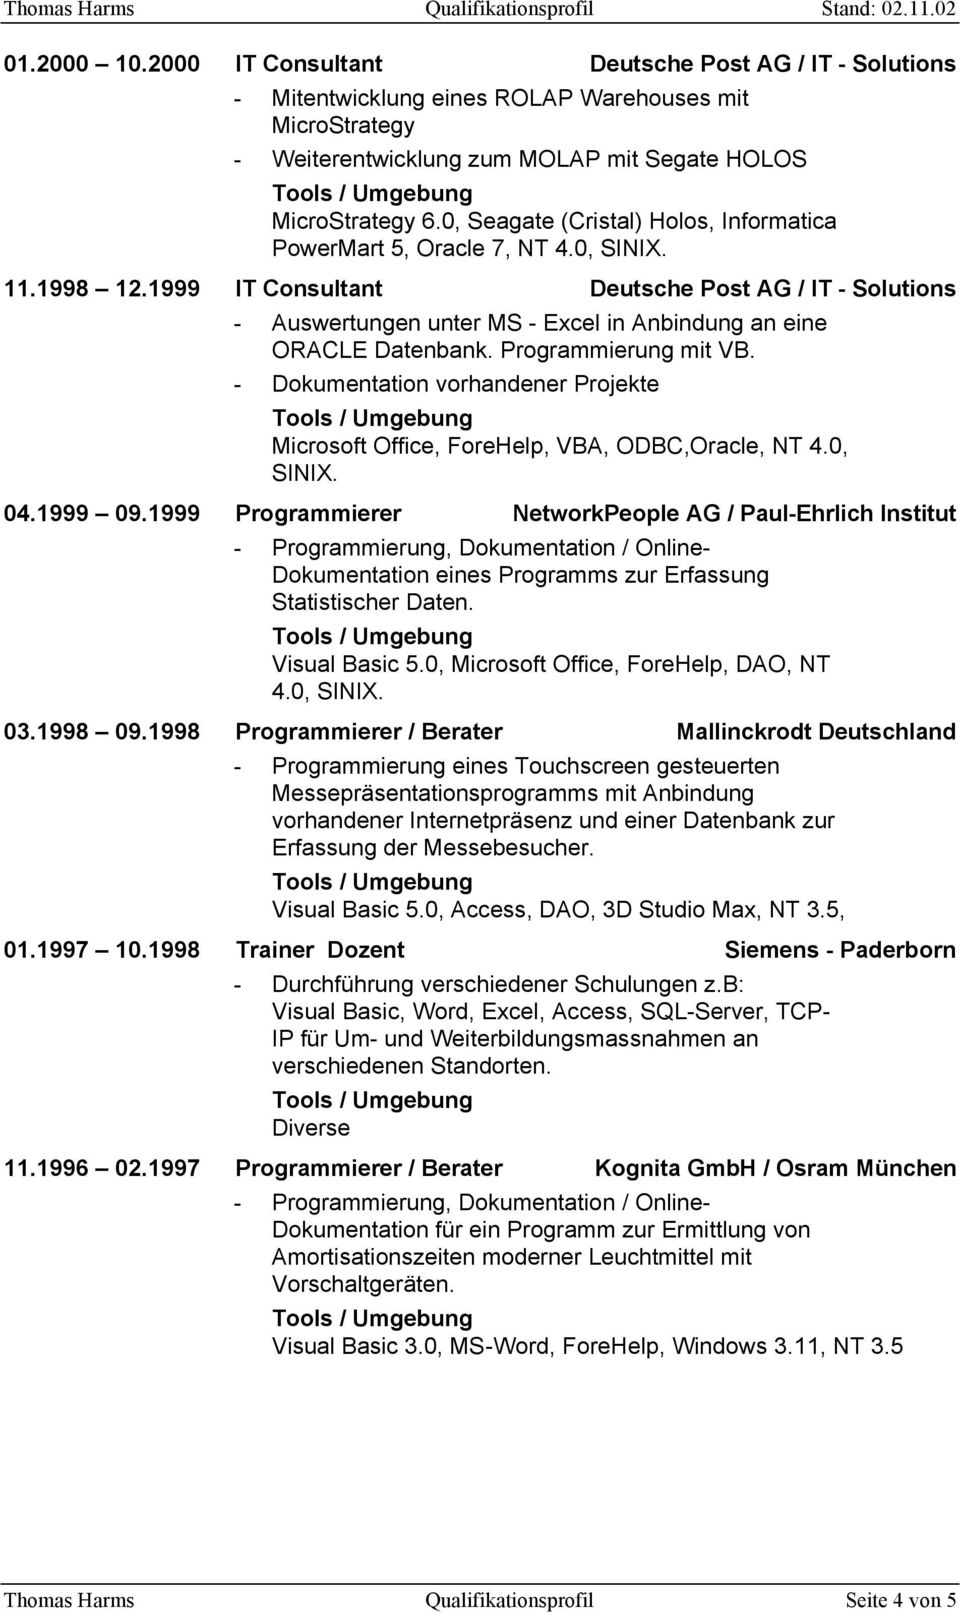 1999 IT Consultant Deutsche Post AG / IT - Solutions - Auswertungen unter MS - Excel in Anbindung an eine ORACLE Datenbank. Programmierung mit VB.